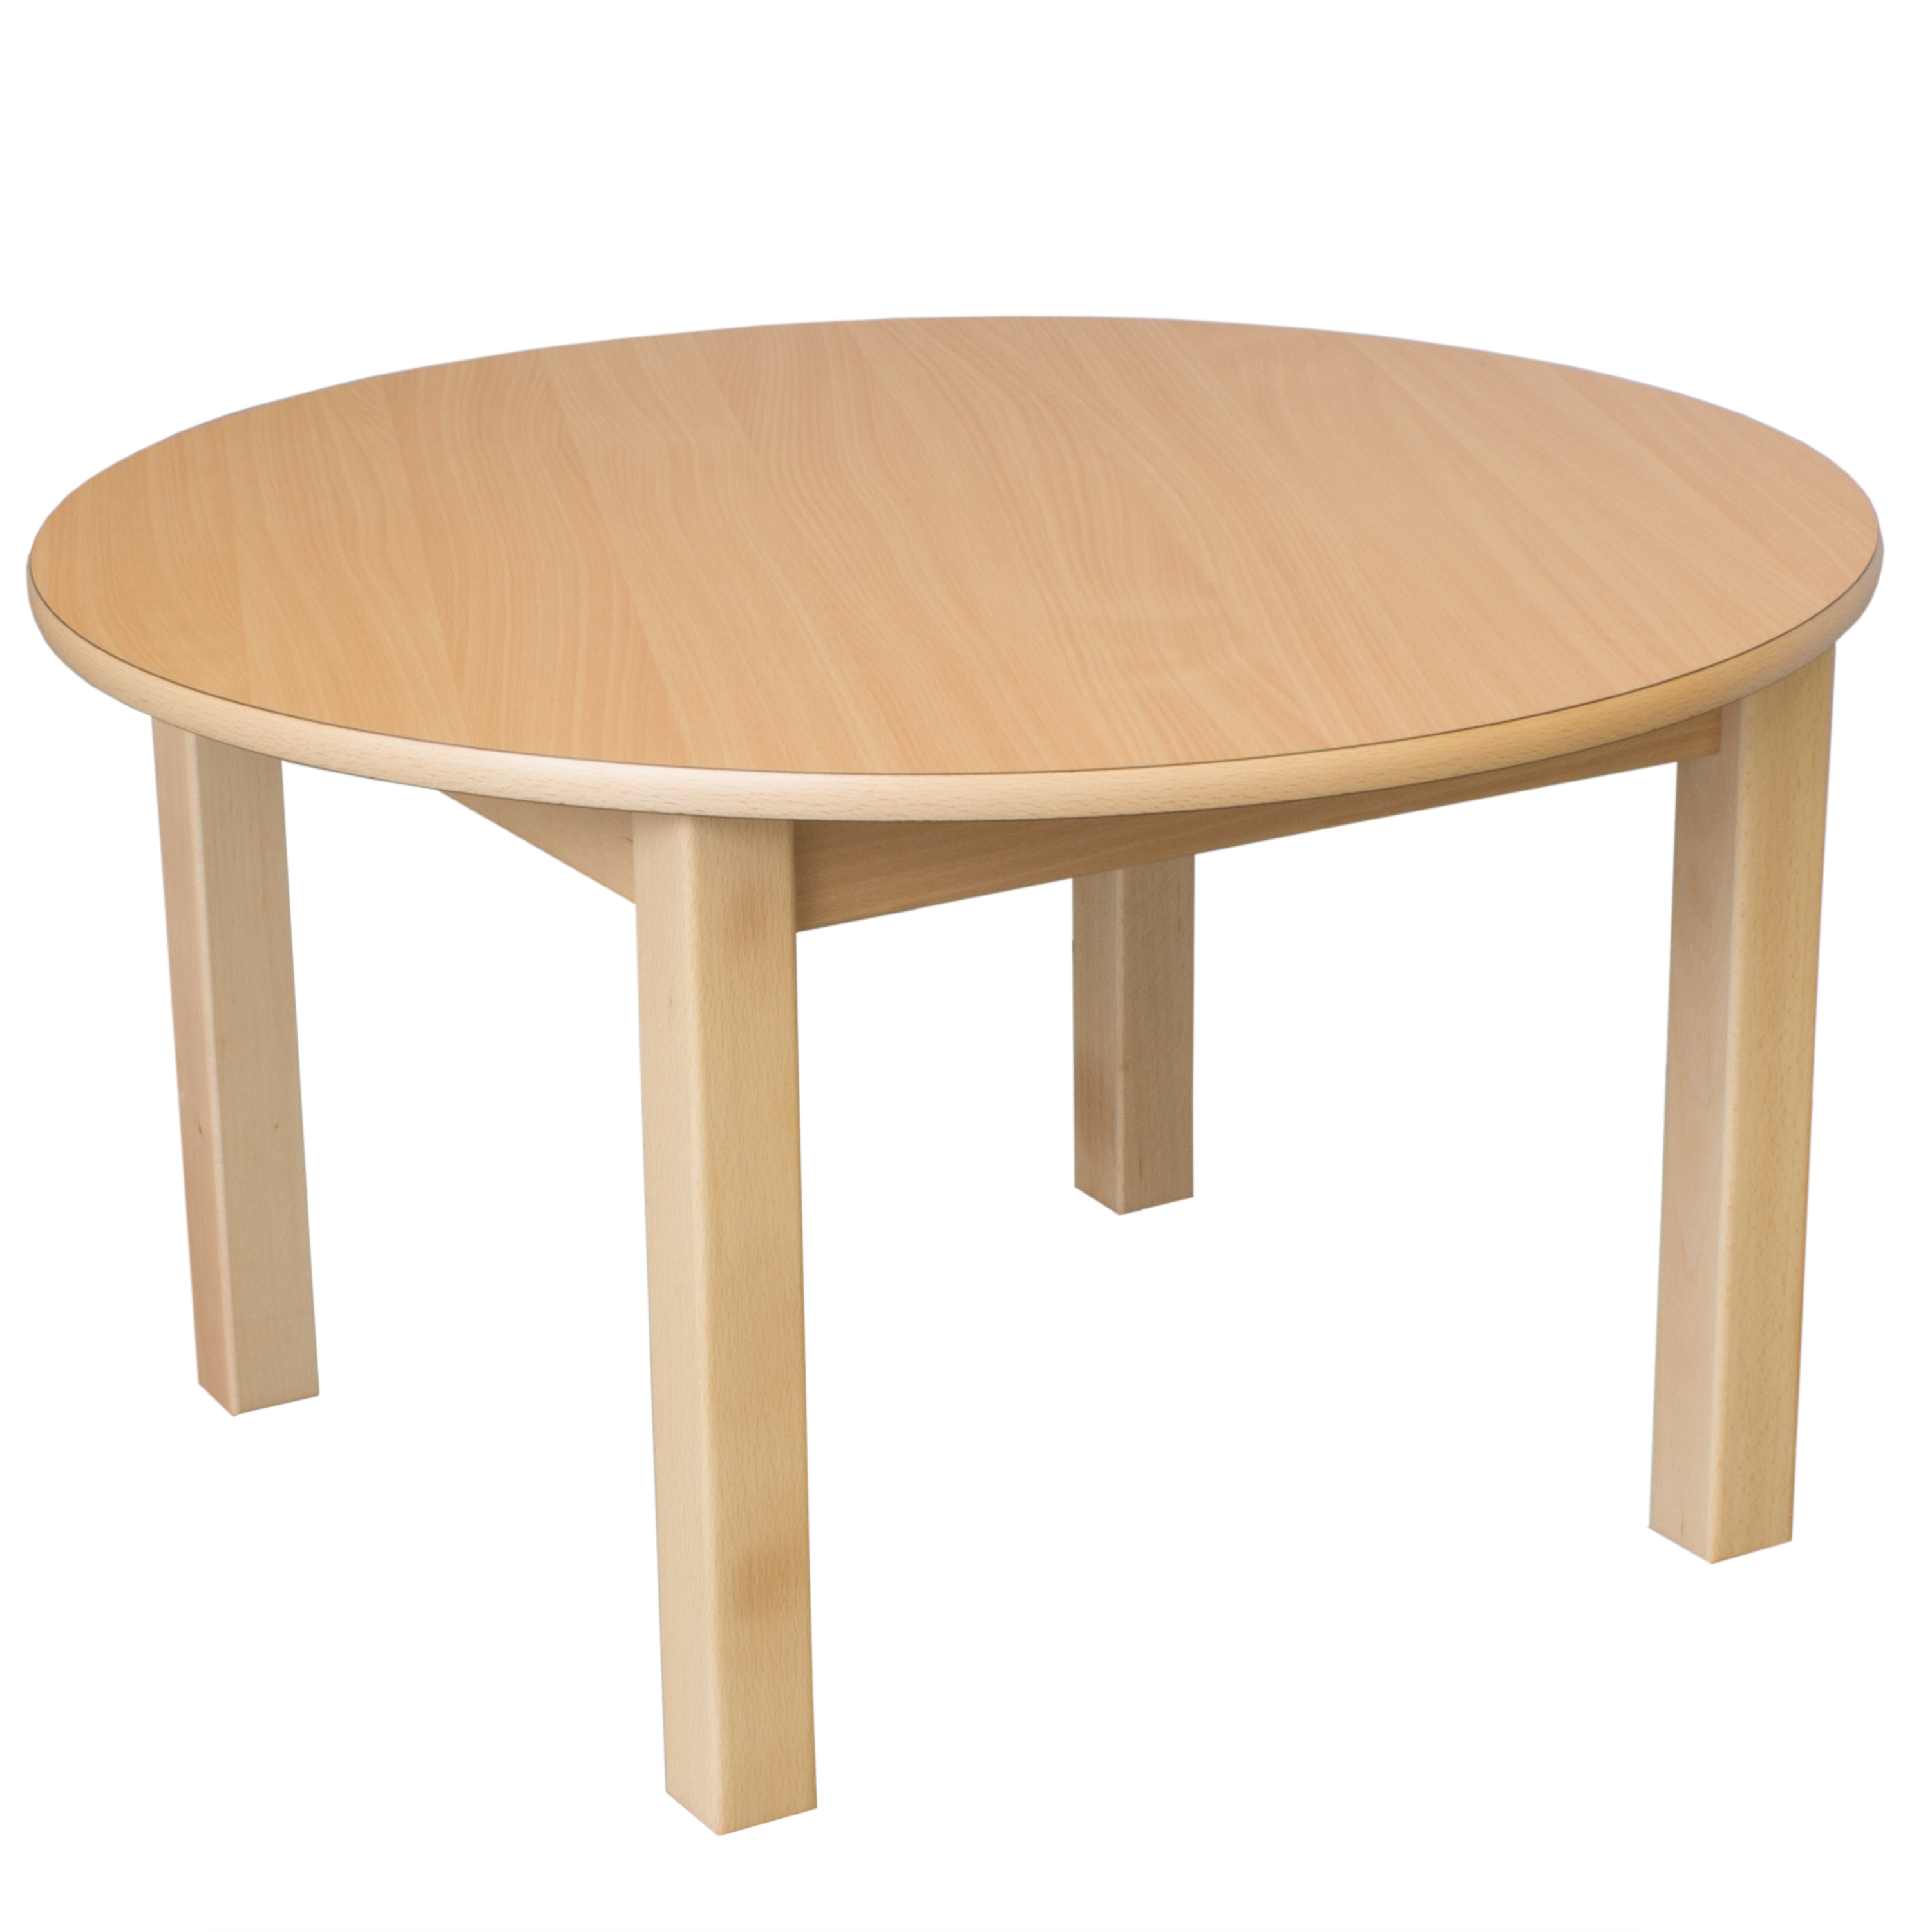 Runder Tisch, Durchmesser 80 cm, Tischhöhe 40 cm